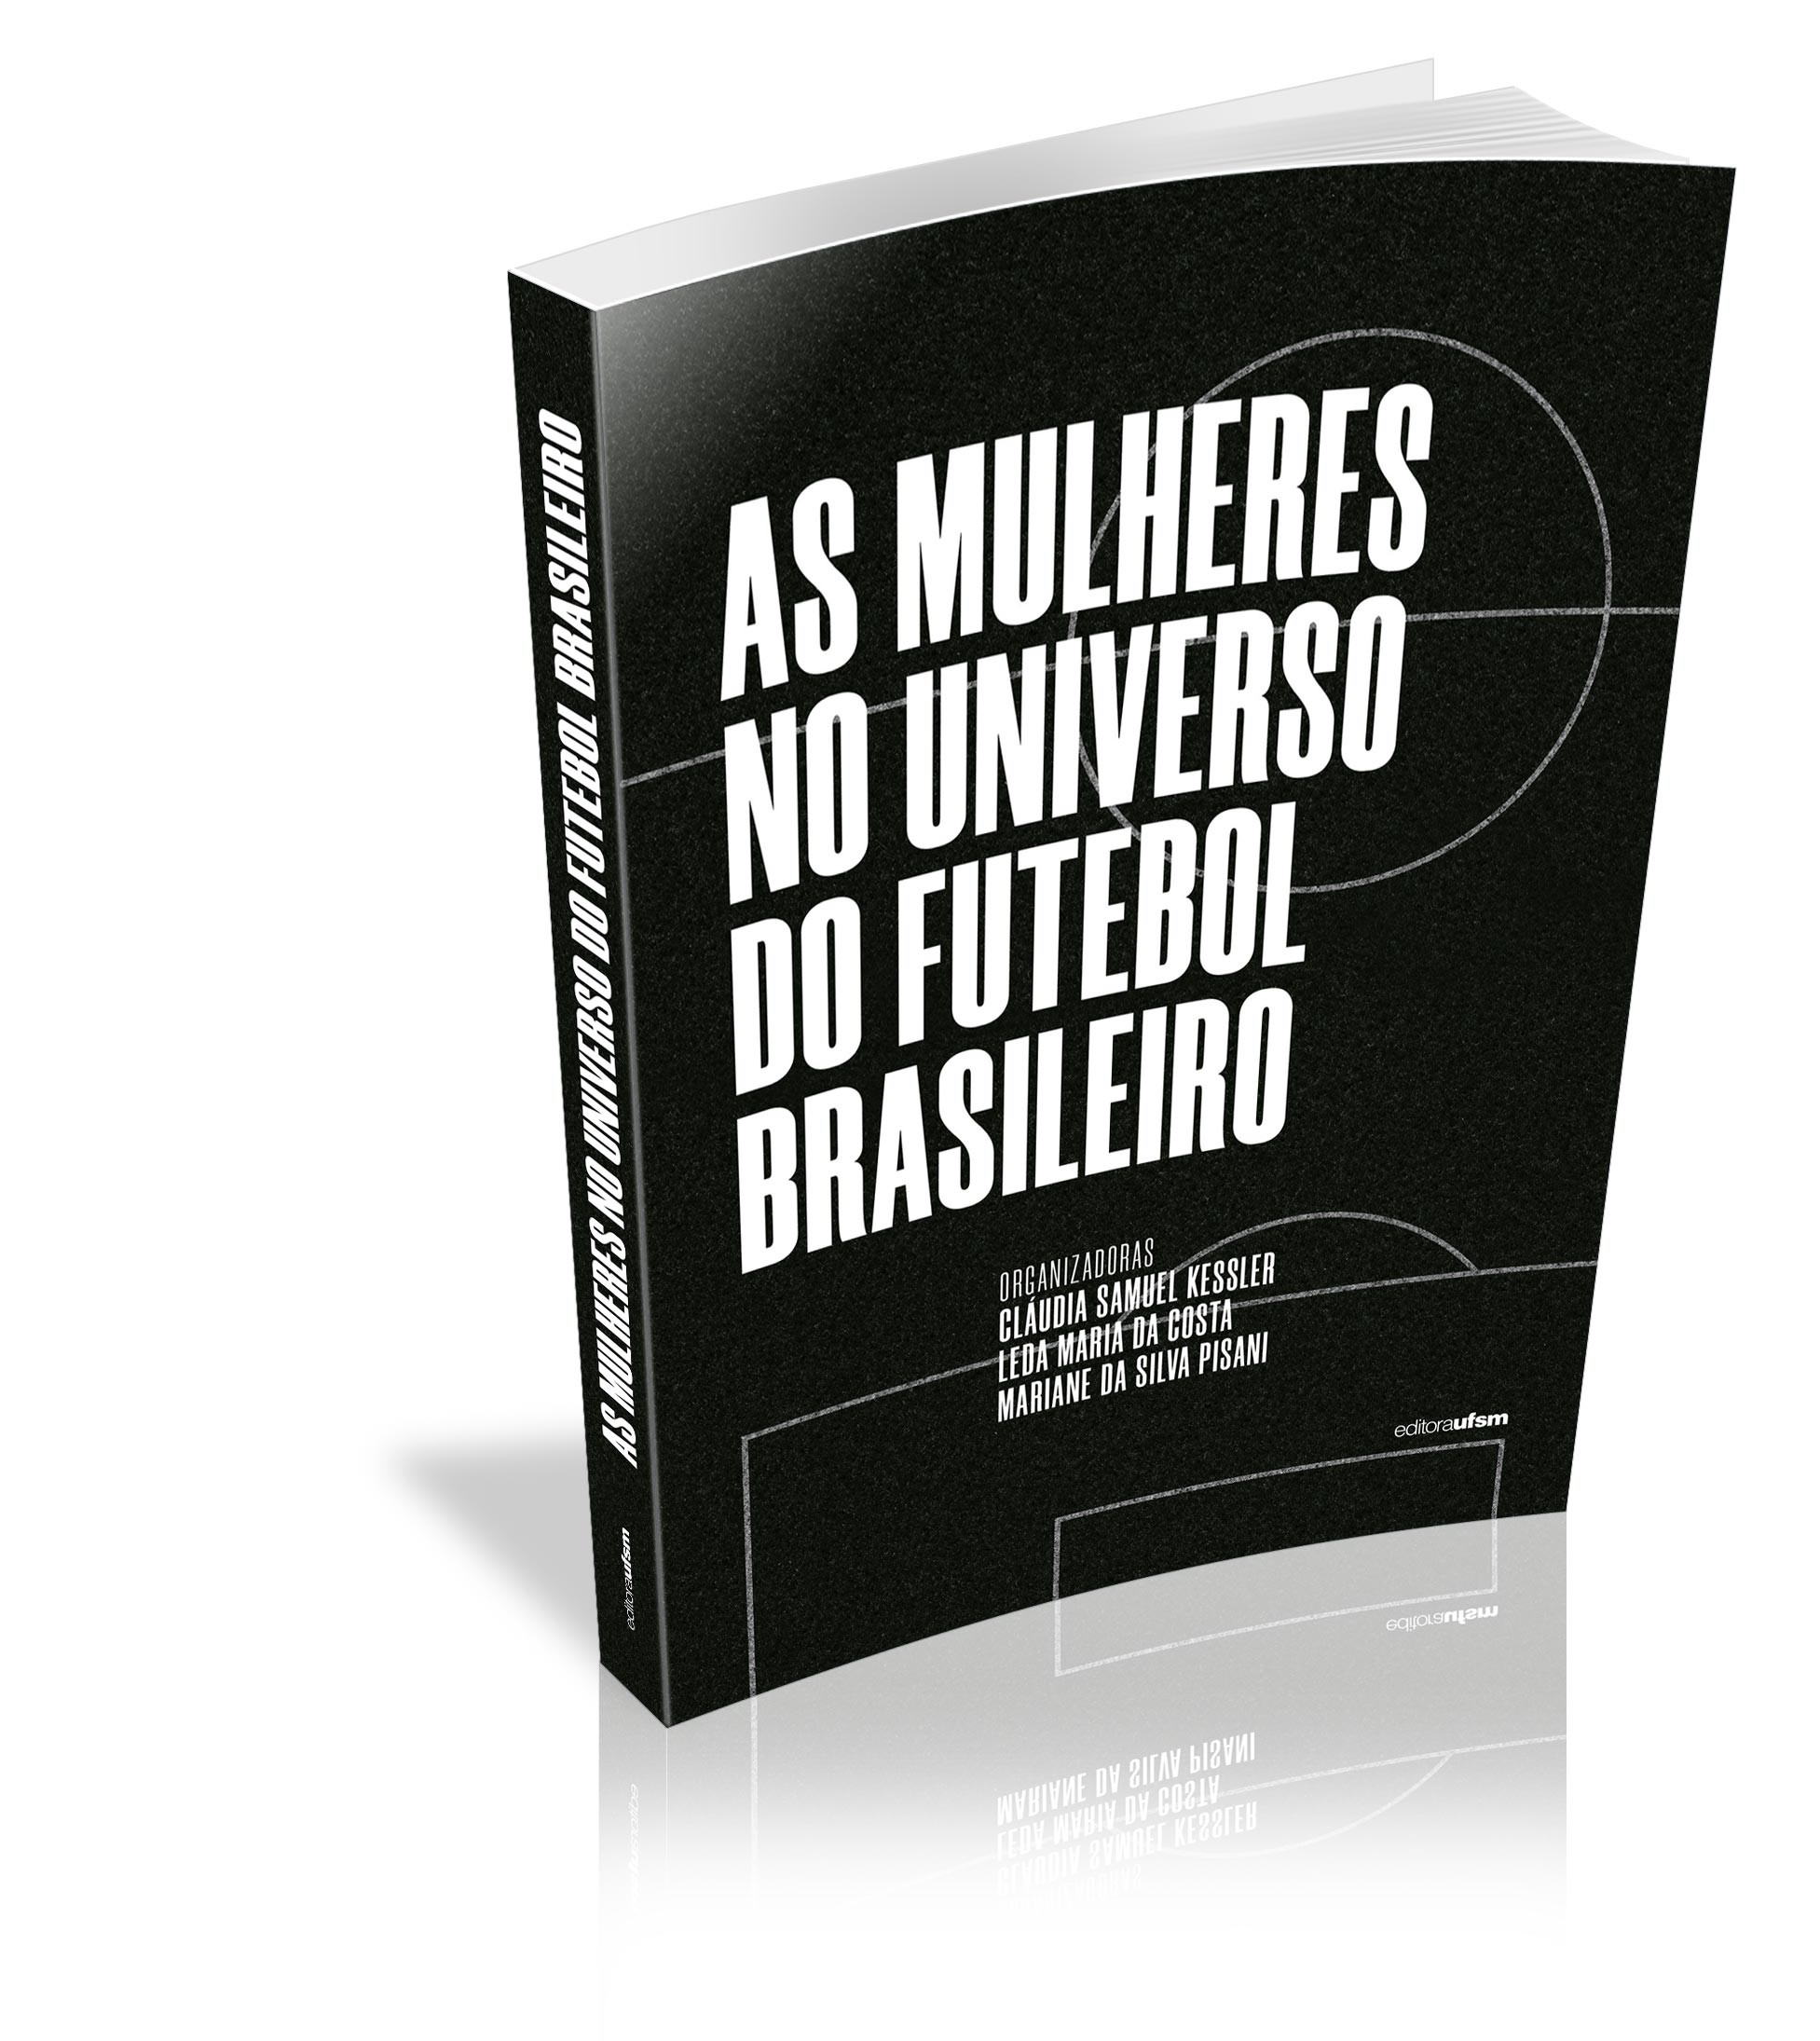 Capa do livro As mulheres no universo do futebol brasileiro